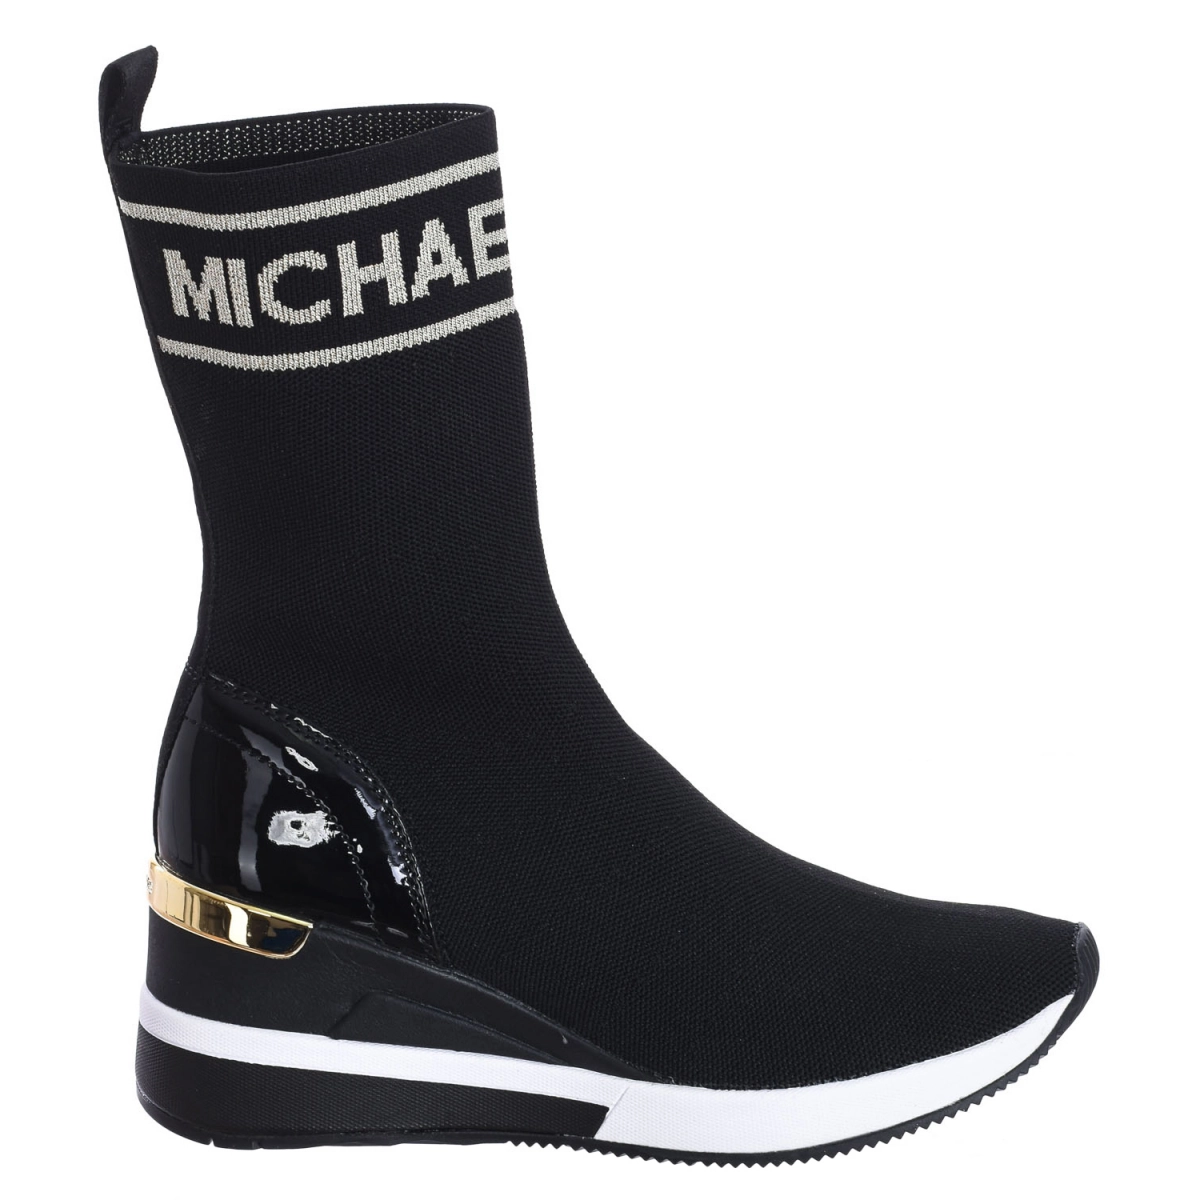 Zapatilla Sneaker Skyler tipo calcetín de punto elástico Michael Kors F2SKFE5D mujer Talla: 36 Color: Negro F2SKFE5D-BLK-PALEGOLD.36